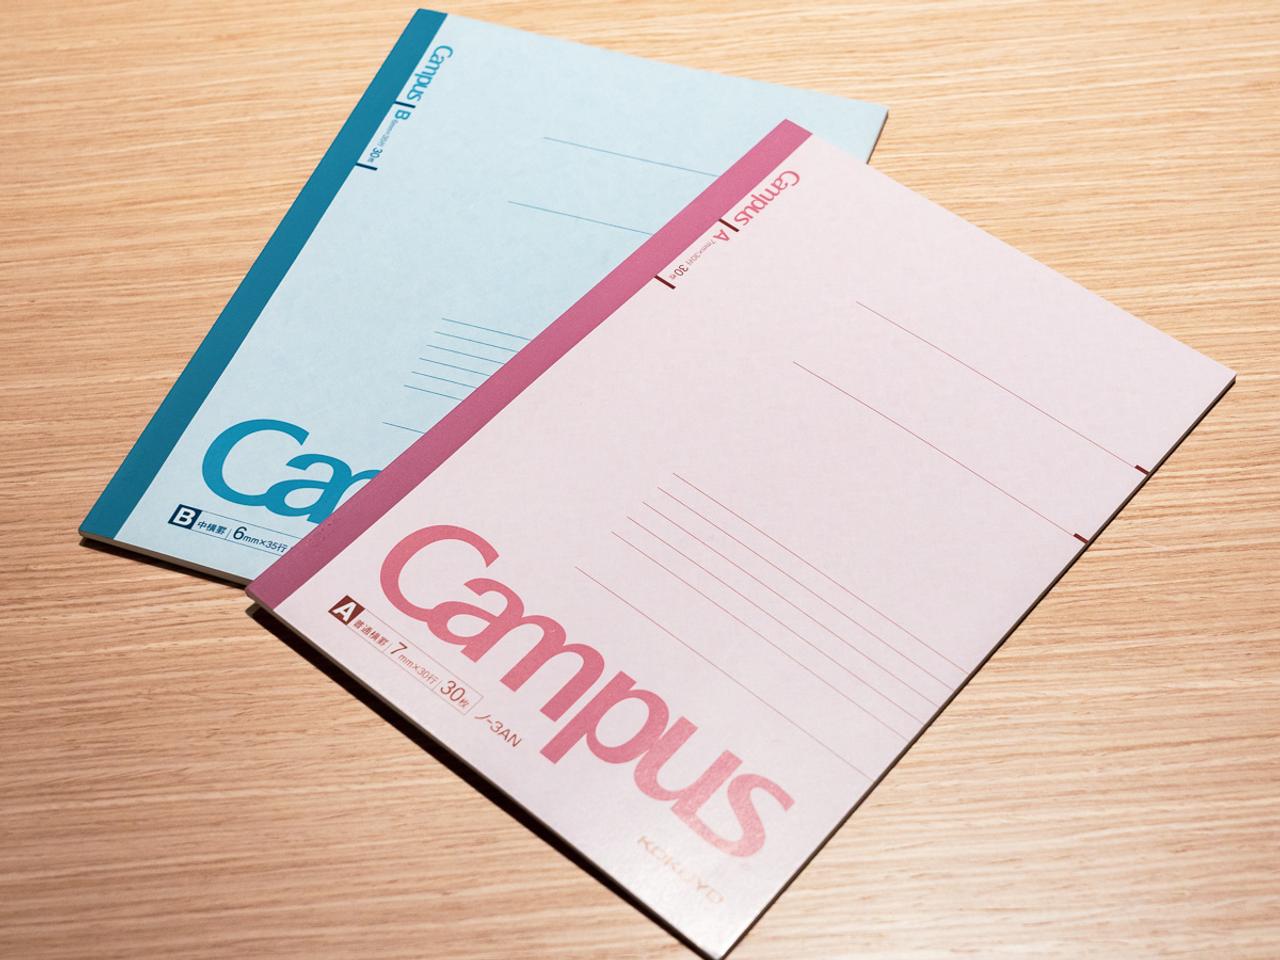 キャンパスノートは、コクヨが生産・販売するノートの代表的なブランドだ。